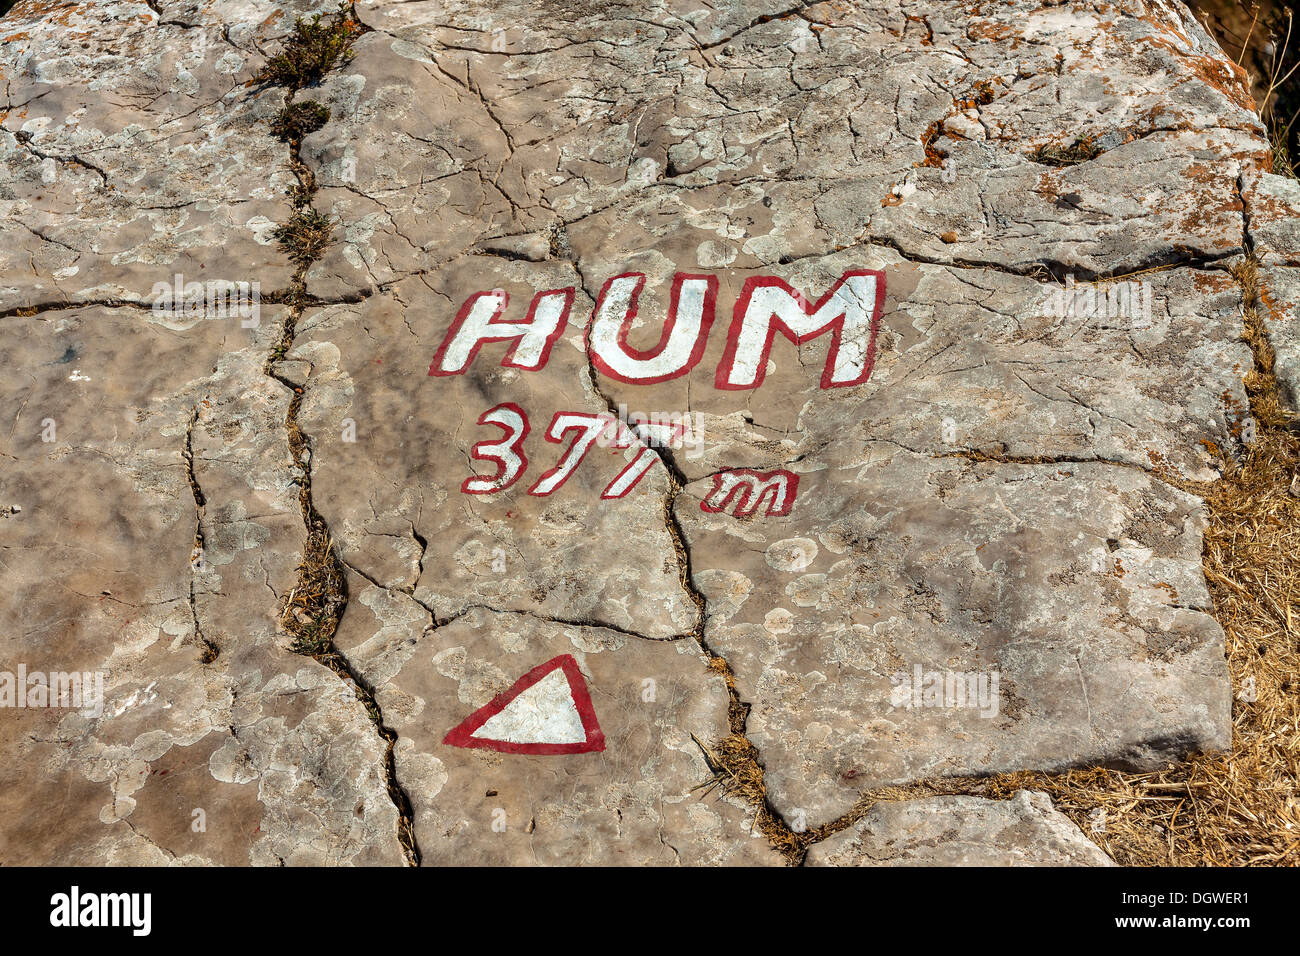 Hum hill punto più alto 377 m. sulla isola di Korcula, Croazia Foto Stock